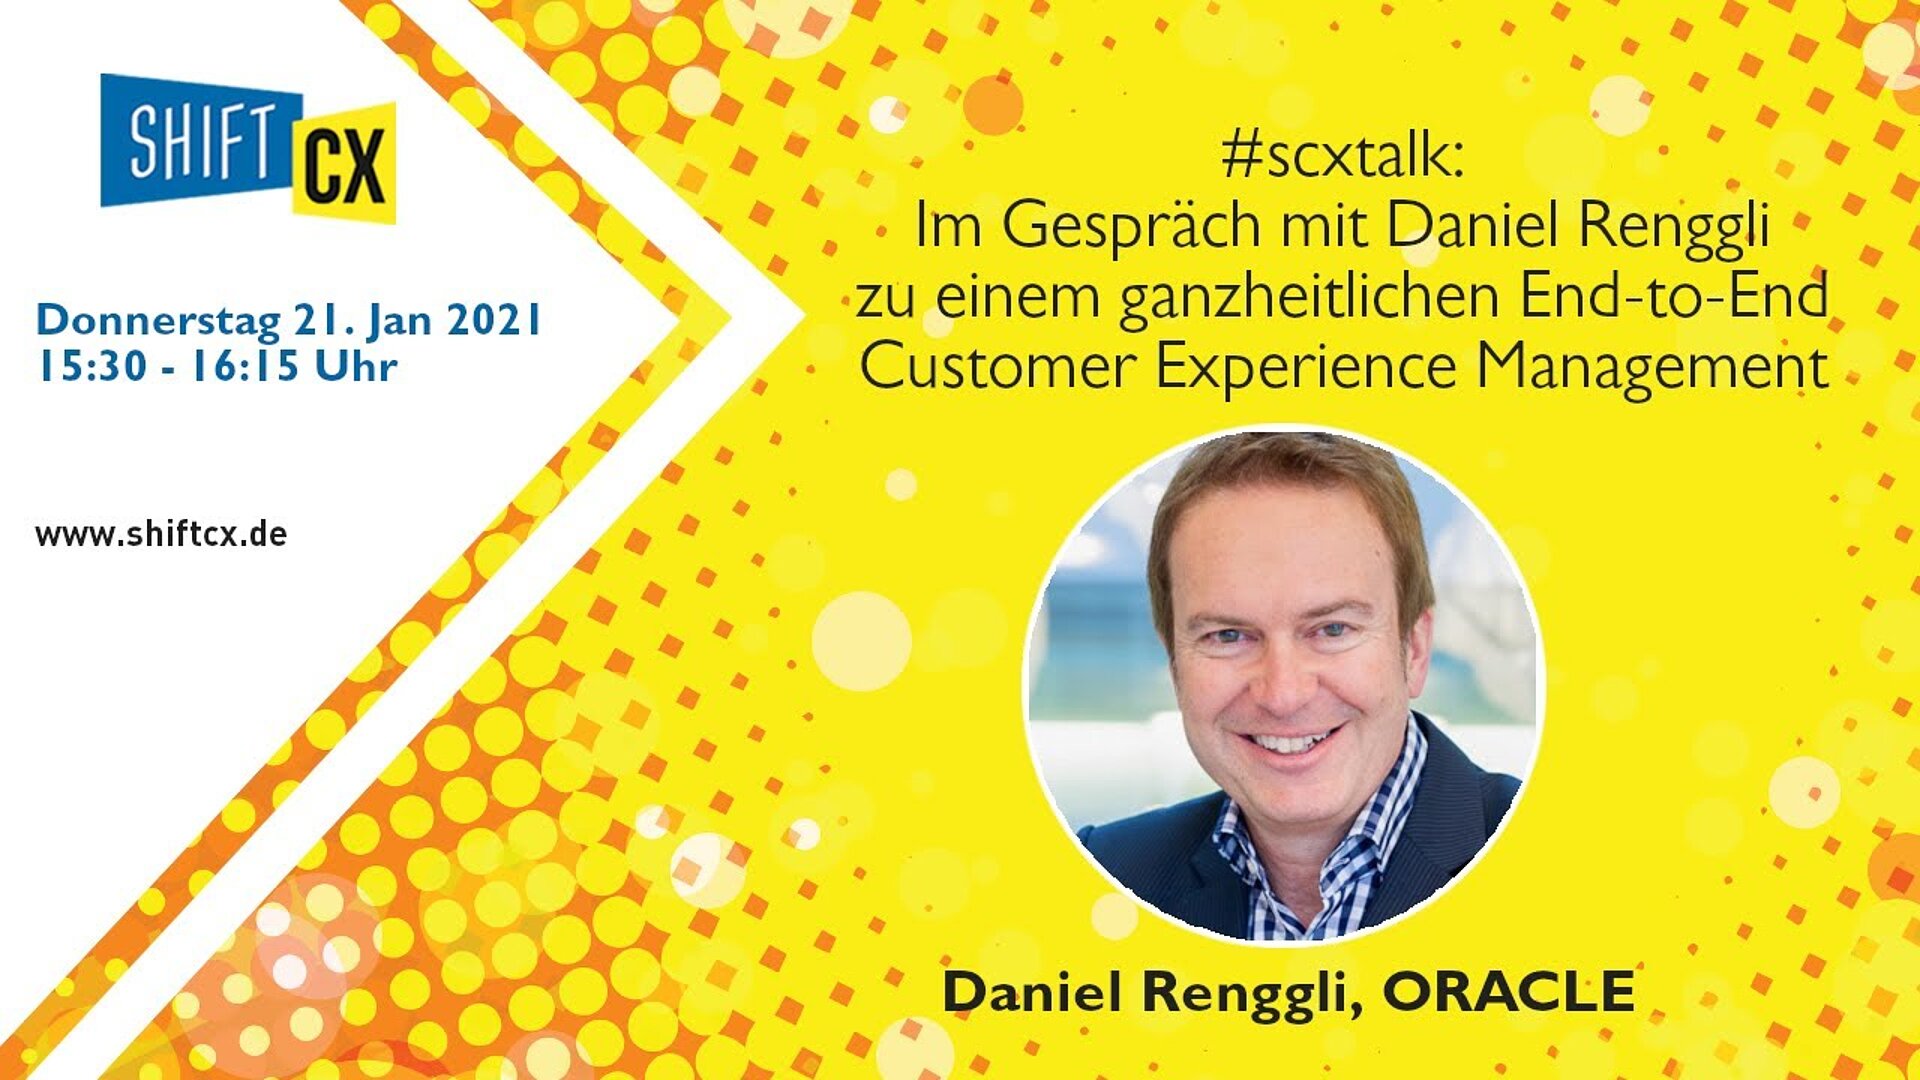 Im Gespräch mit Daniel Renggli zu einem ganzheitlichen End-to-End Customer Experience Management